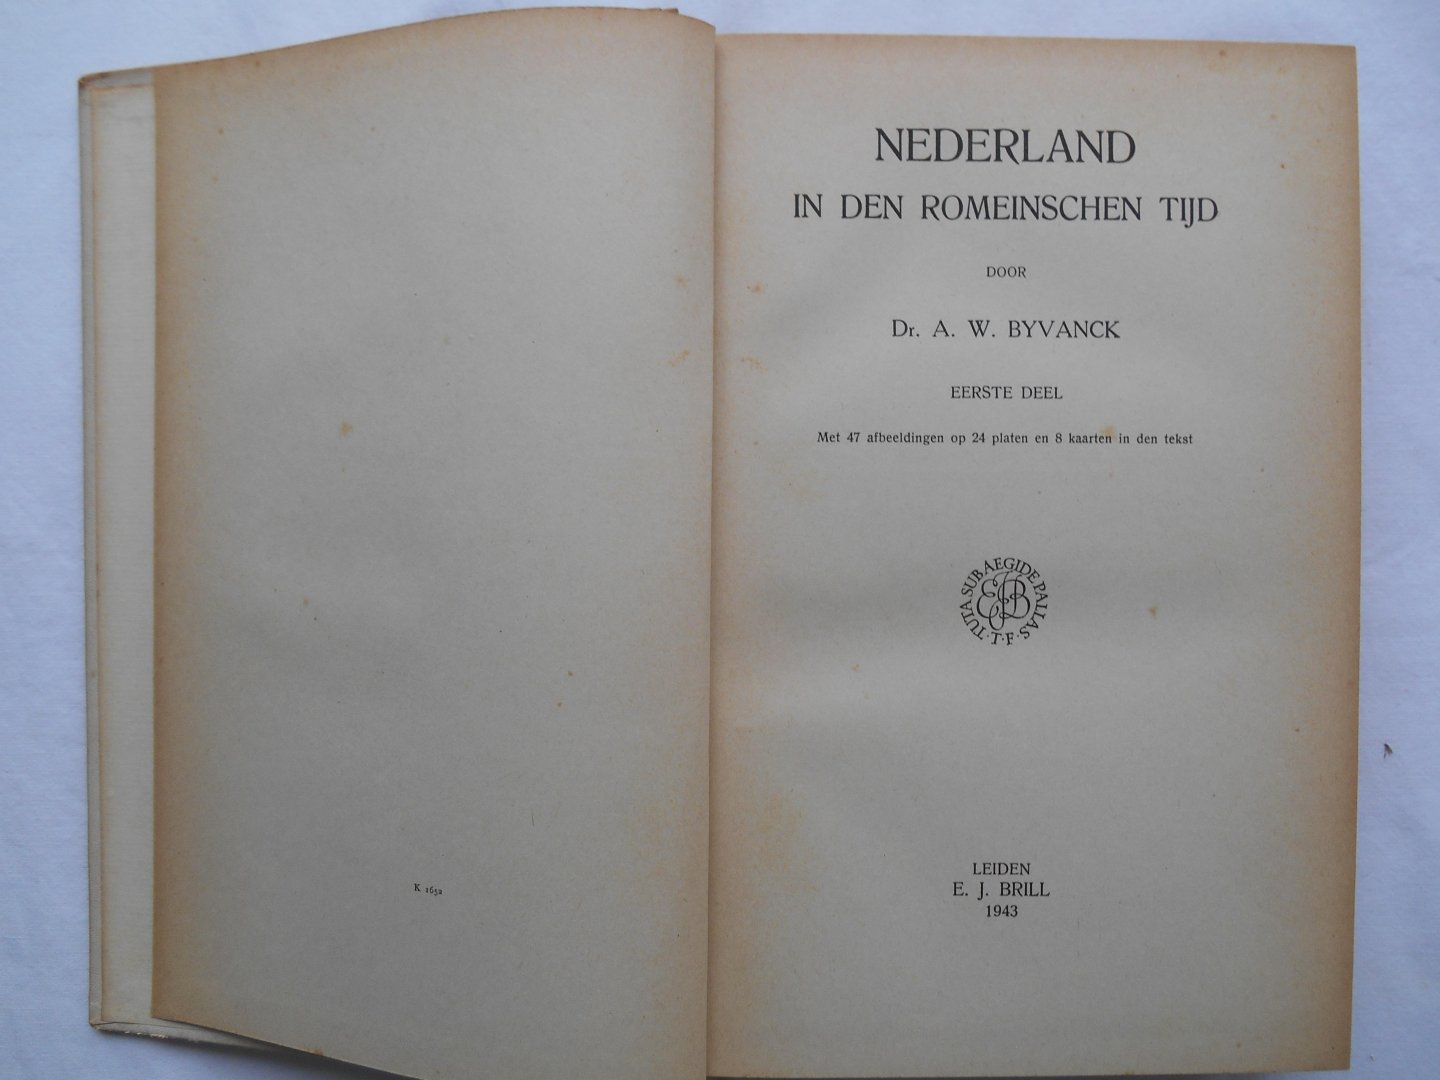 Byvanck, Dr. A. W. - Nederland in den Romeinschen tijd - deel I en II